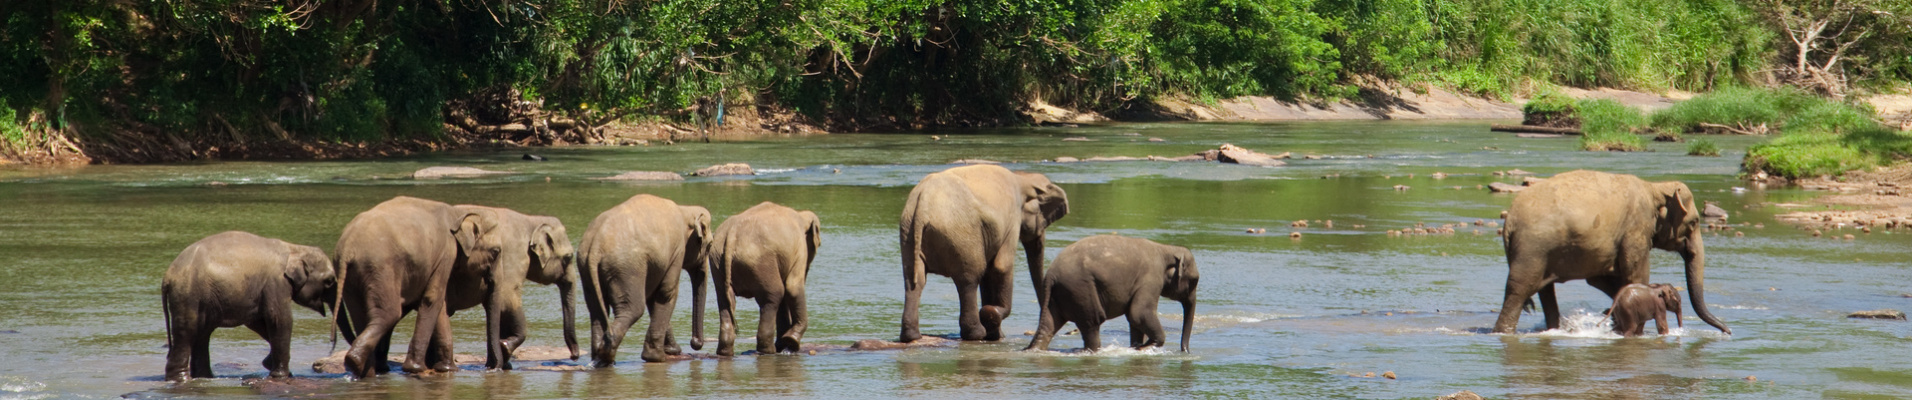 elephants riviere